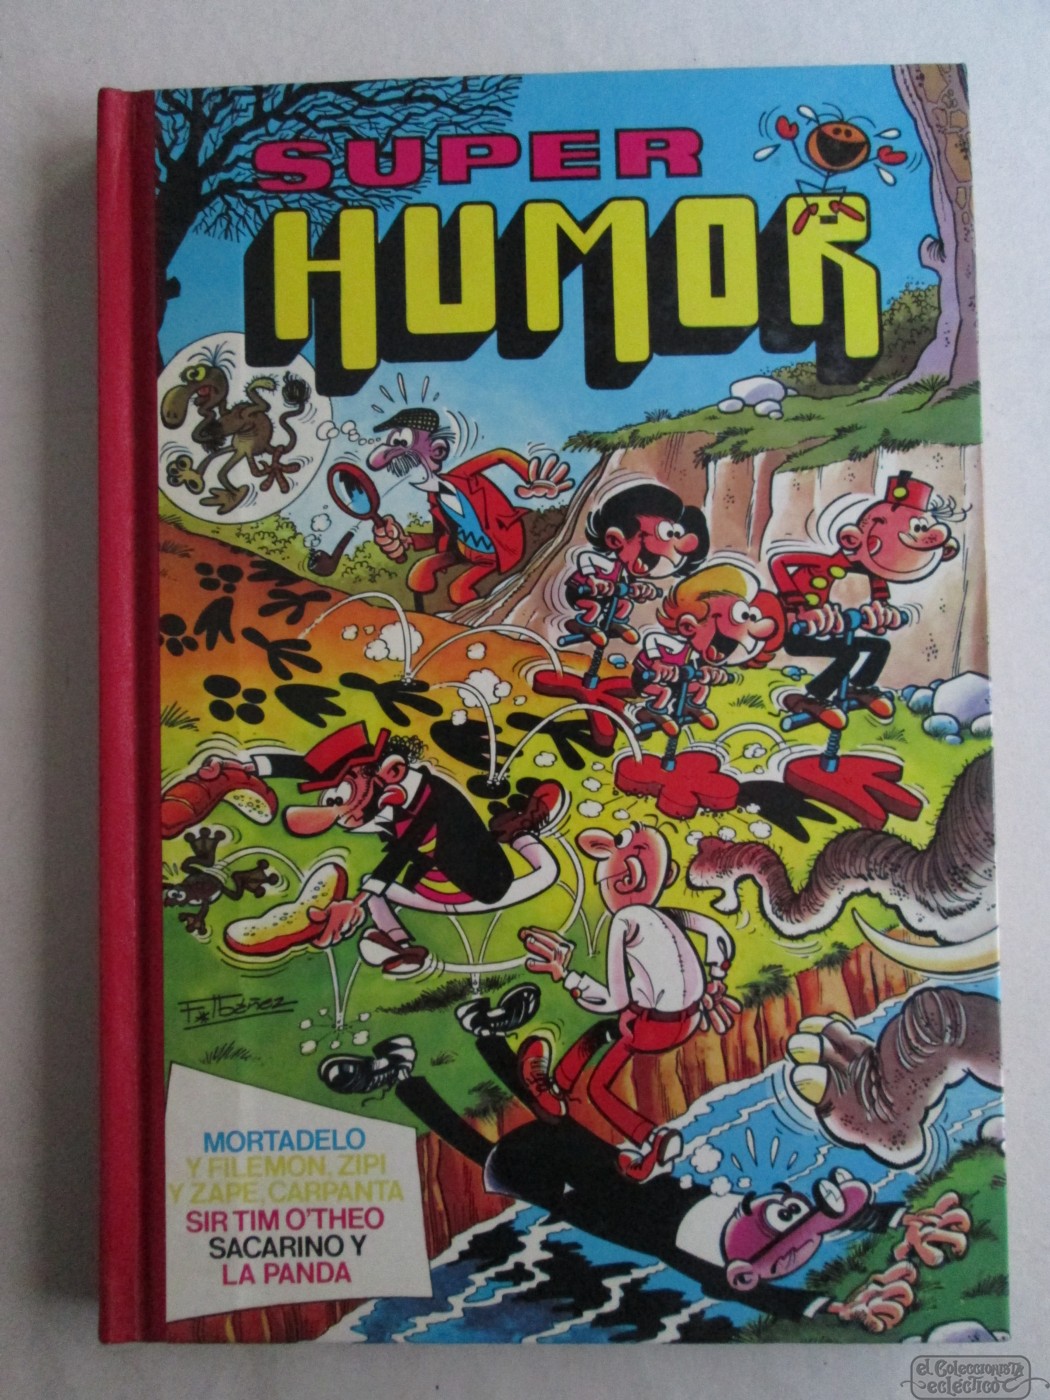 Súper Humor, Tomo Xxvi, Bruguera, 1985, Francisco Ibáñez, 319 Páginas